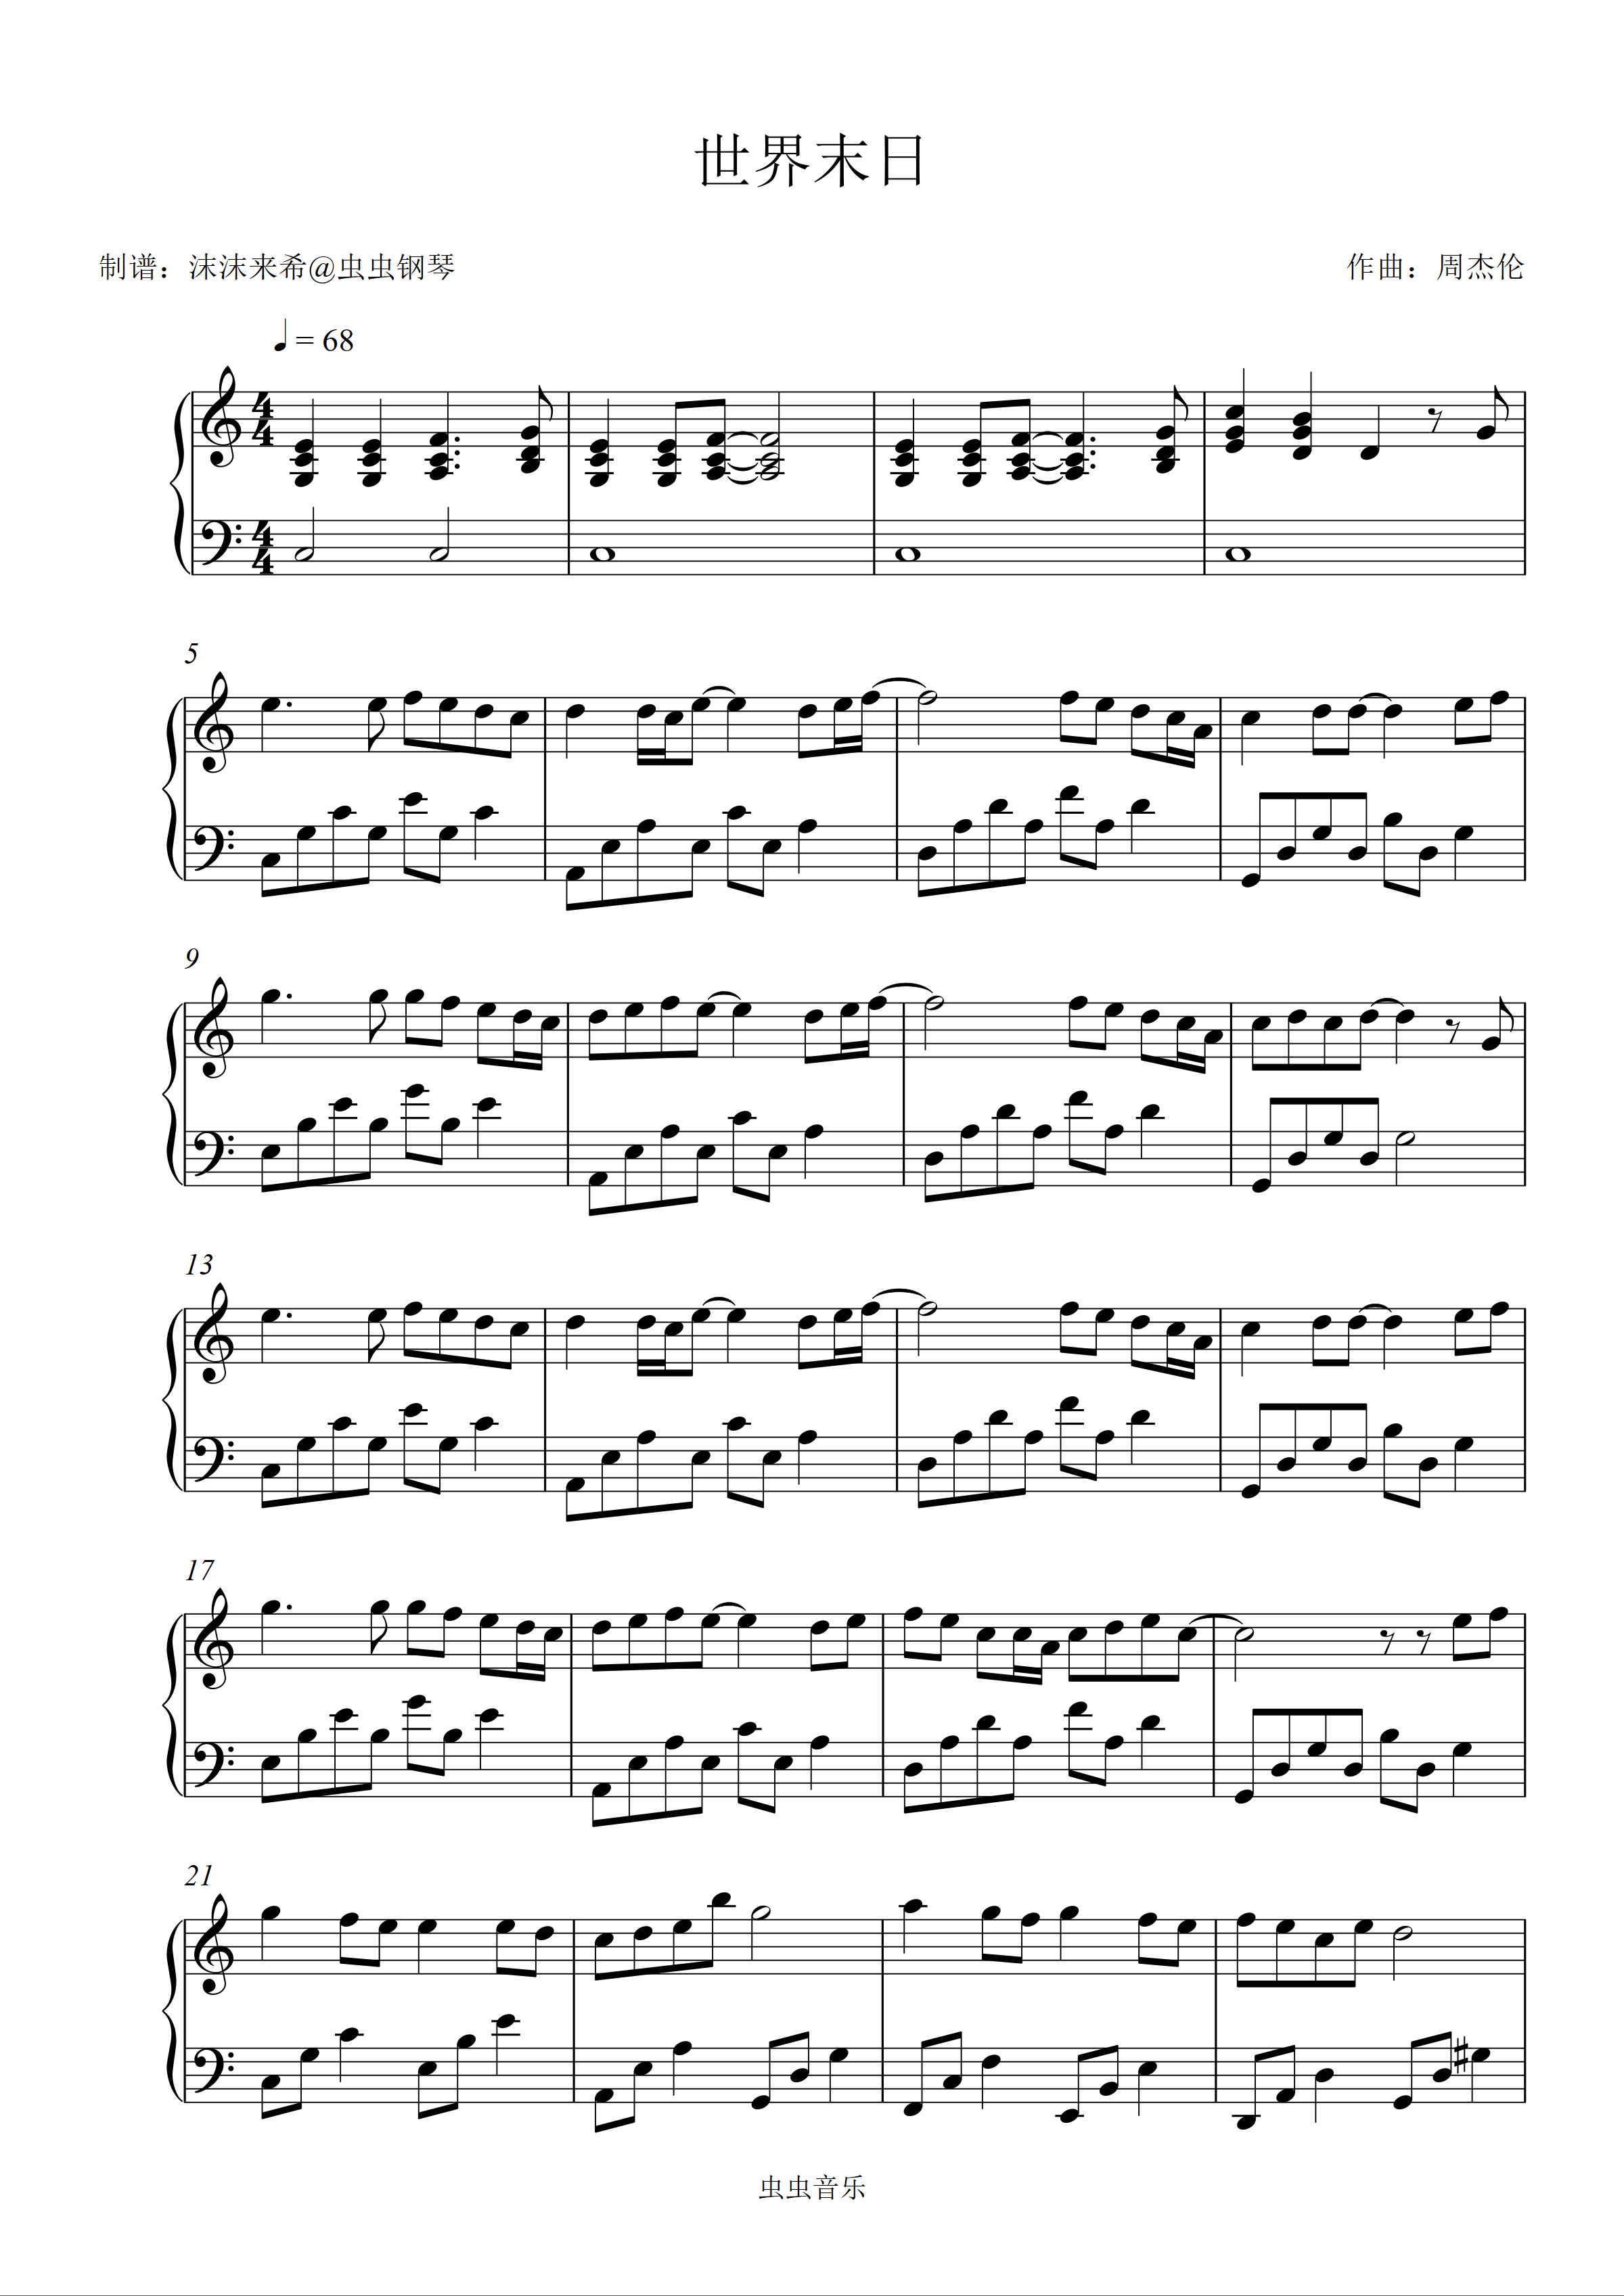 世界末日-周杰伦双手简谱预览6-钢琴谱文件（五线谱、双手简谱、数字谱、Midi、PDF）免费下载